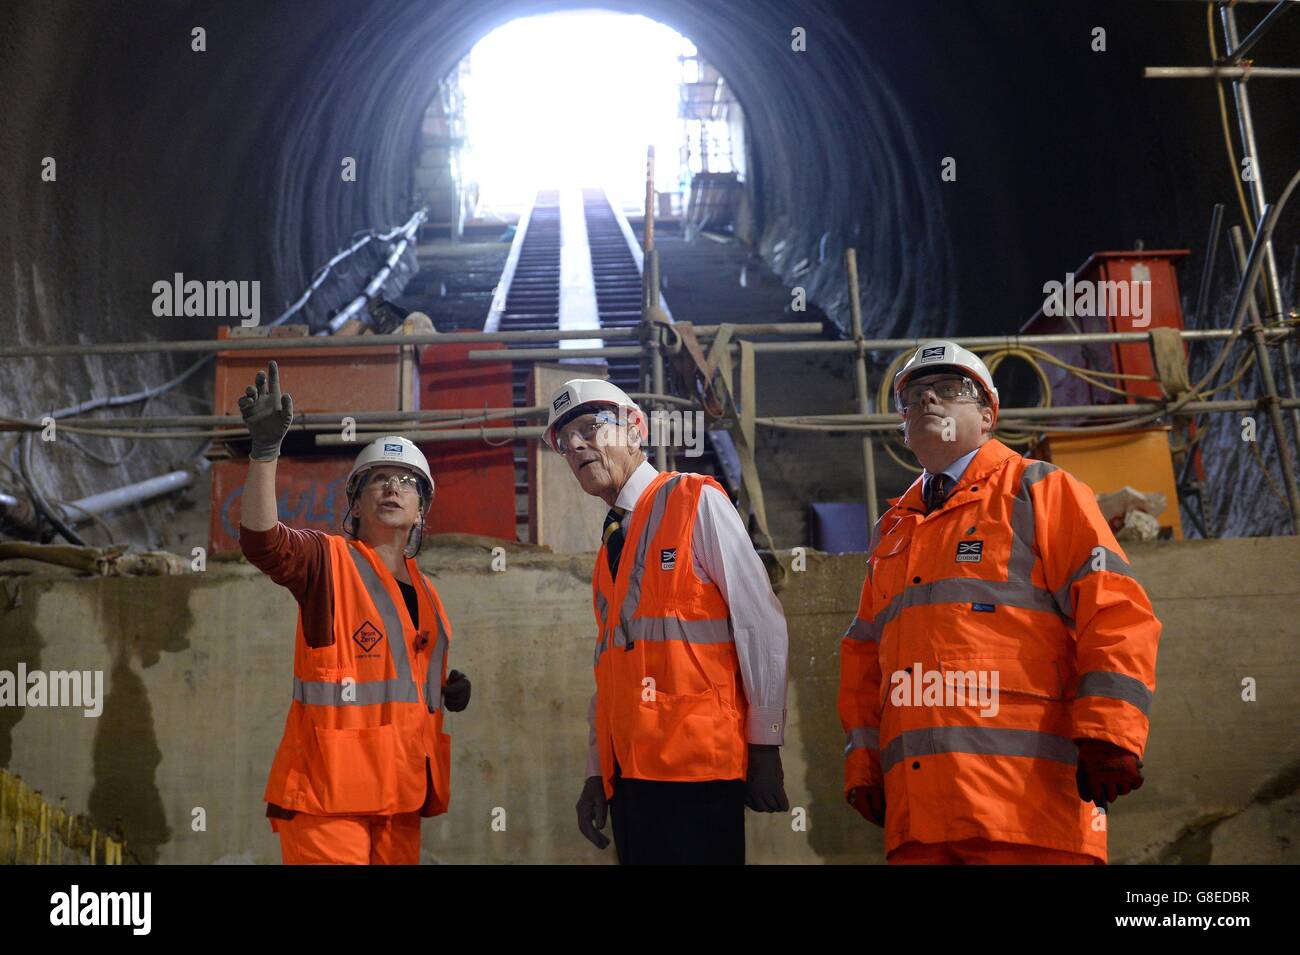 Der Duke of Edinburgh wird von Crossrail Chief Executive Andrew Wolstenholme (rechts) und Project Manager Linda Miller in der neuen Crossrail-Station gezeigt, die 30 Meter unterhalb von Farringdon in London Gestalt annimmt. Stockfoto